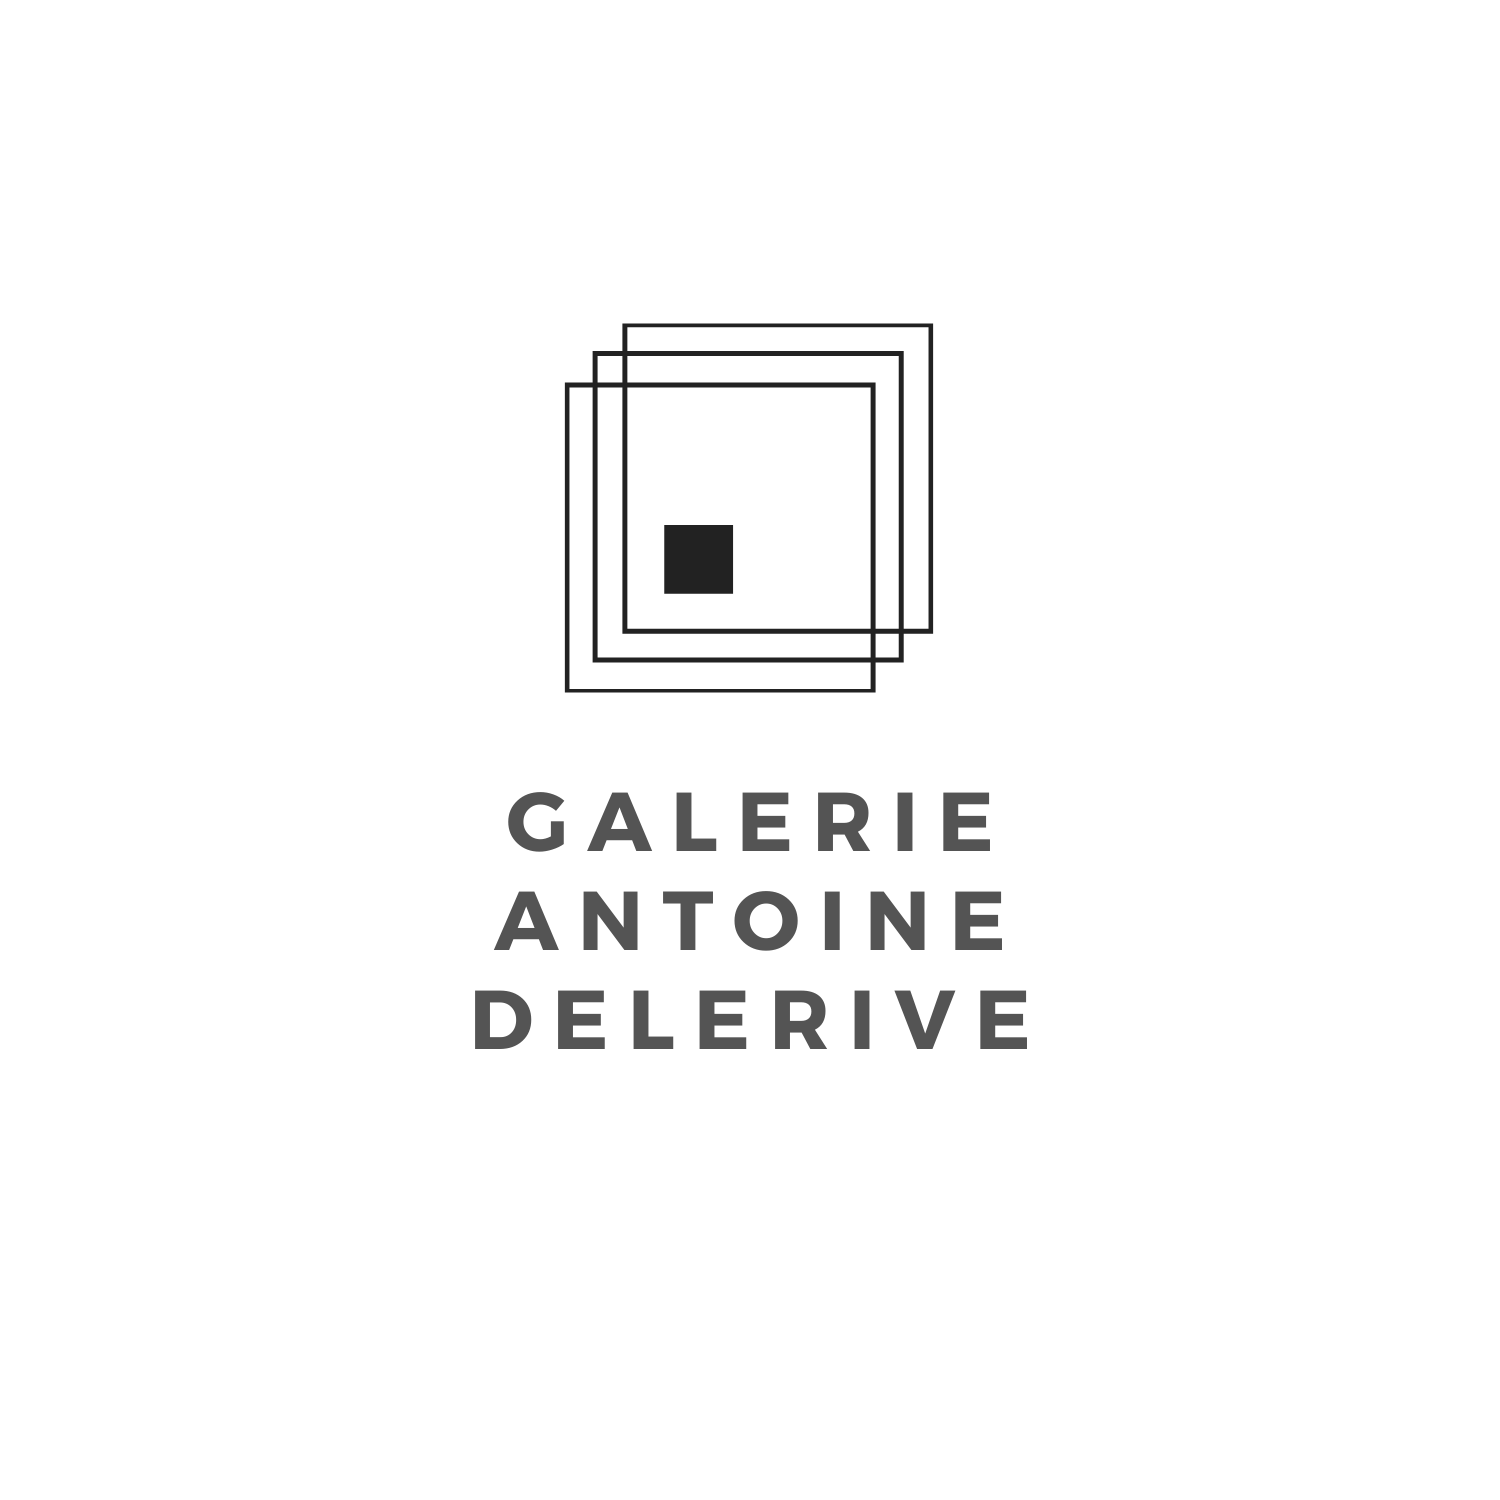 Logo galerie Antoine Delerive grande version noire